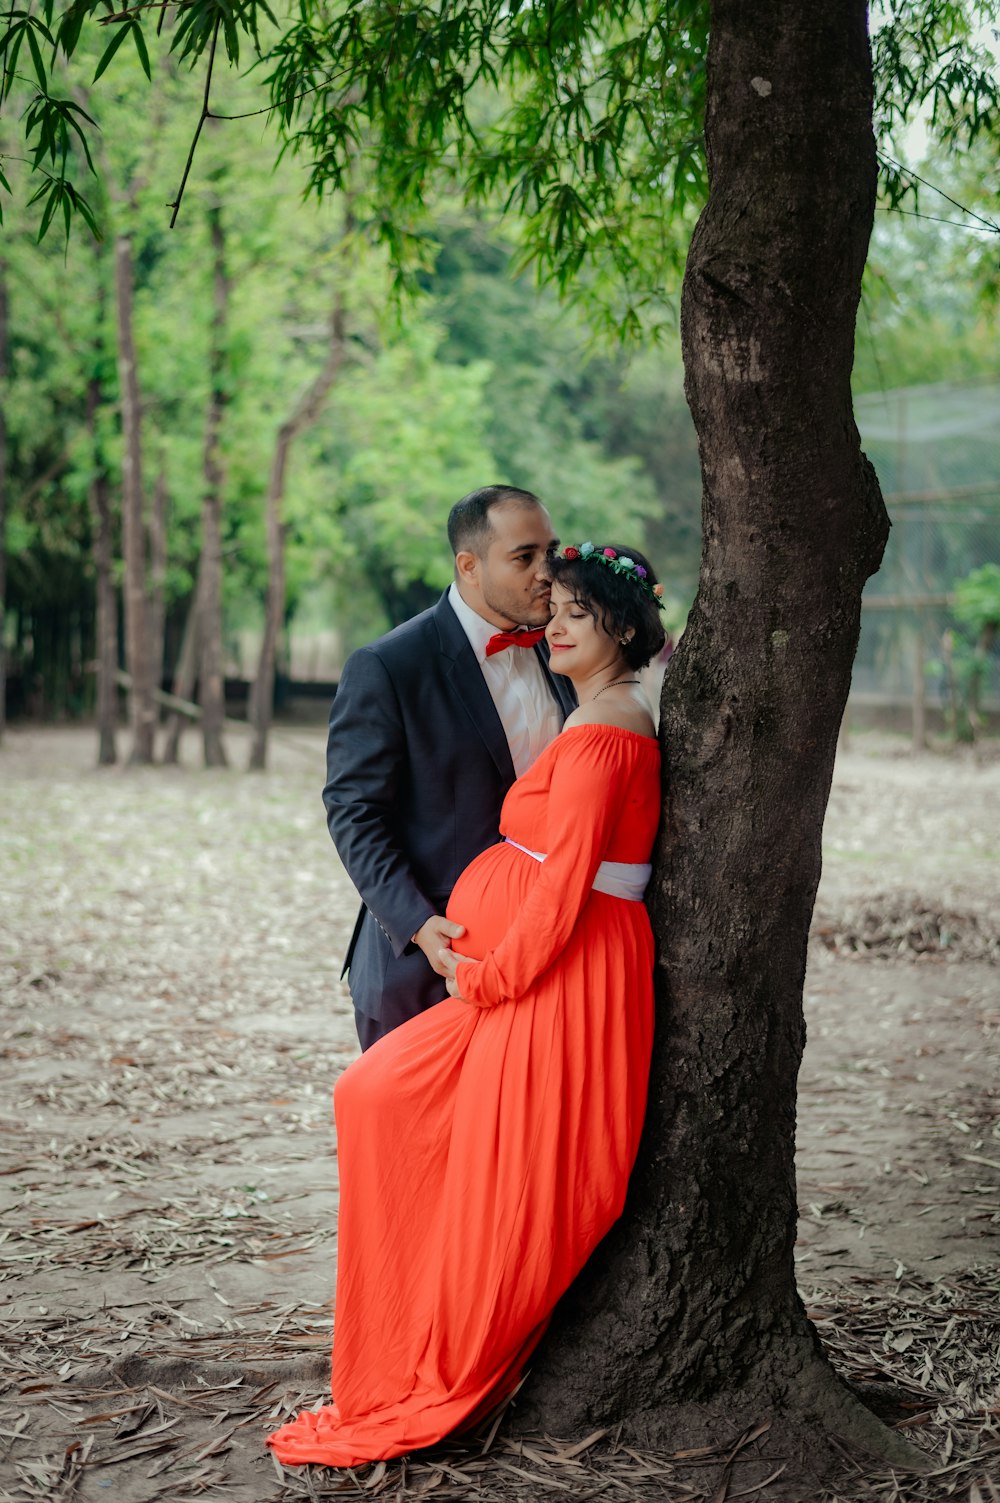 Ein Mann im Anzug und eine Frau in einem orangefarbenen Kleid lehnen sich an einen Baum